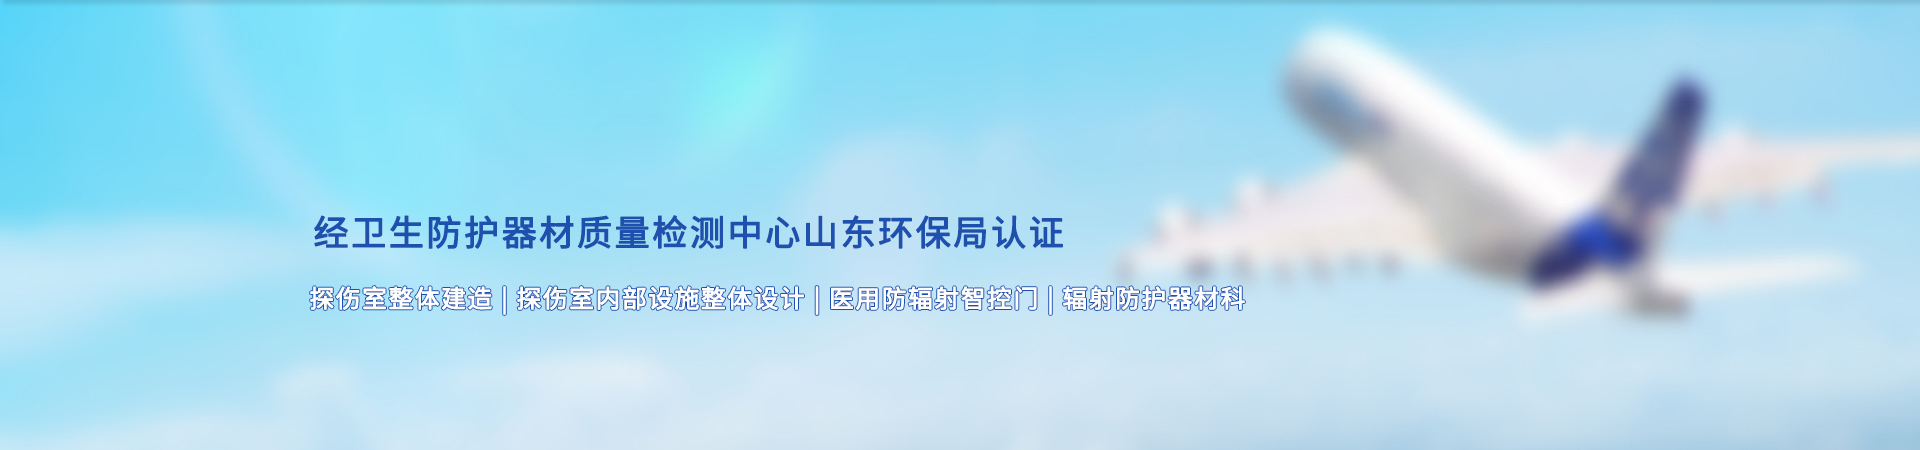 http://www.runshengyang.com/data/images/slide/20190827171901_376.jpg